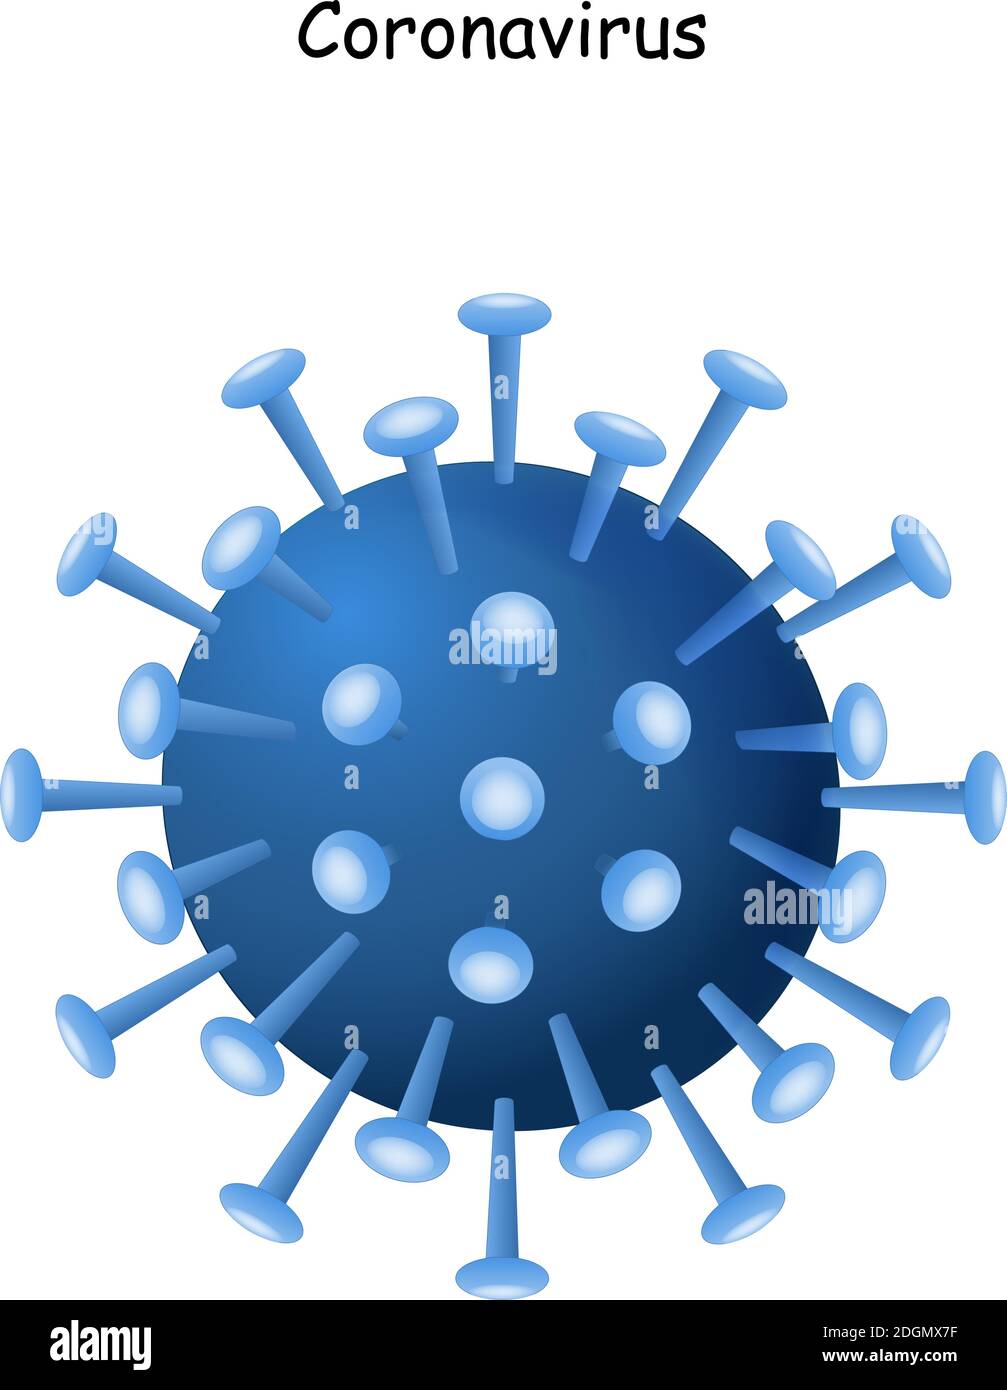 Coronavirus 2019-nCoV. Icono del virus de la corona. China patógeno infección respiratoria (brote de gripe asiática). Gripe pandémica. Virión Ilustración del Vector